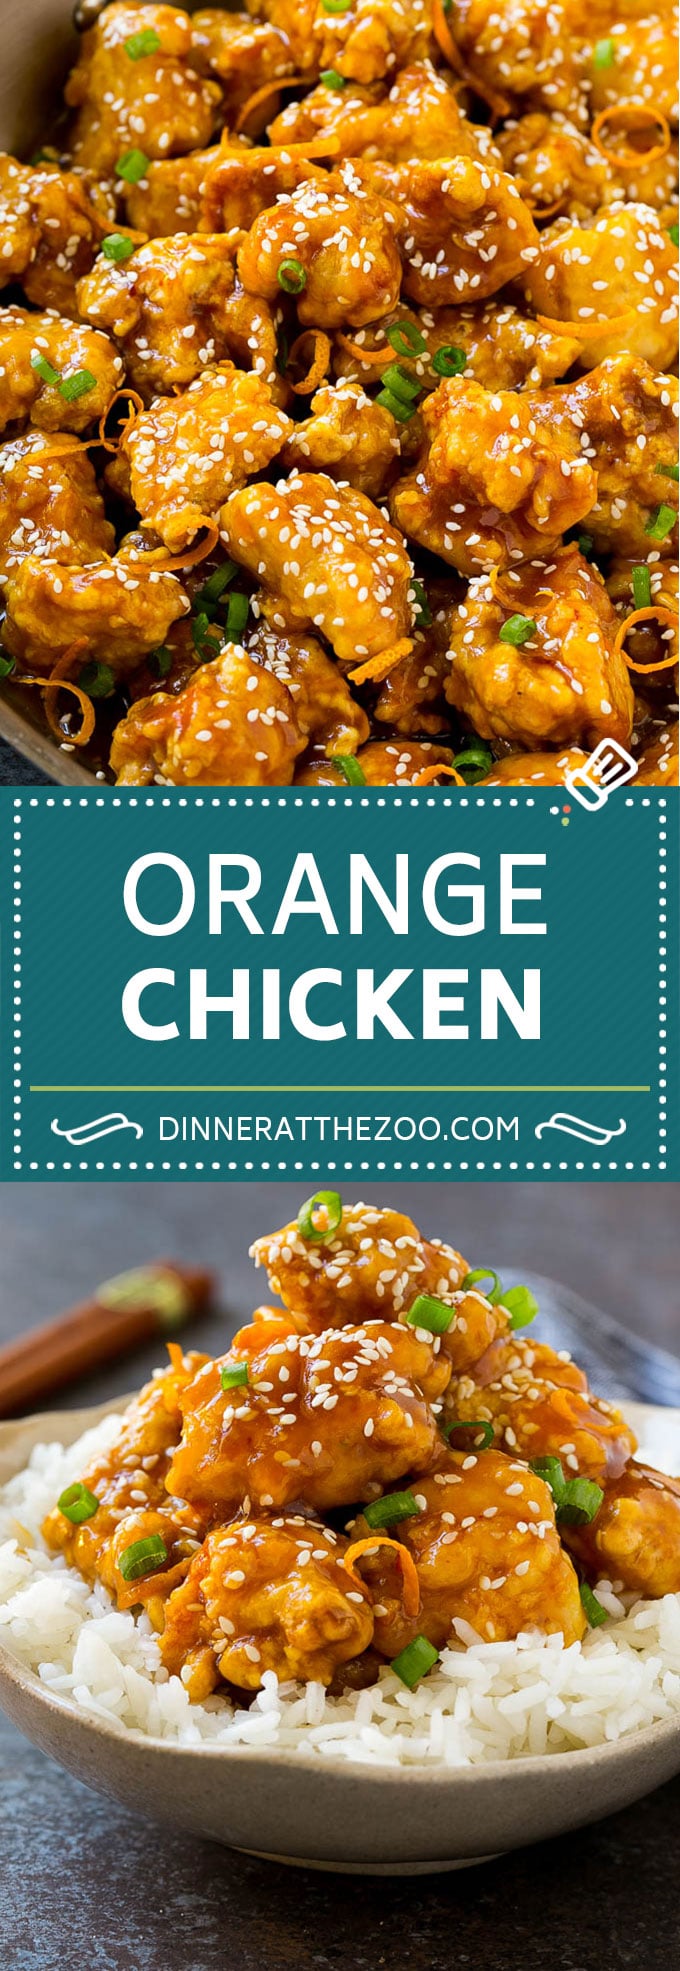 Orange Chicken Recipe | Chinese Orange Chicken | Panda Express Orange Chicken #orange #chicken #takeout #chinesefood #dinner #dinneratthezoo